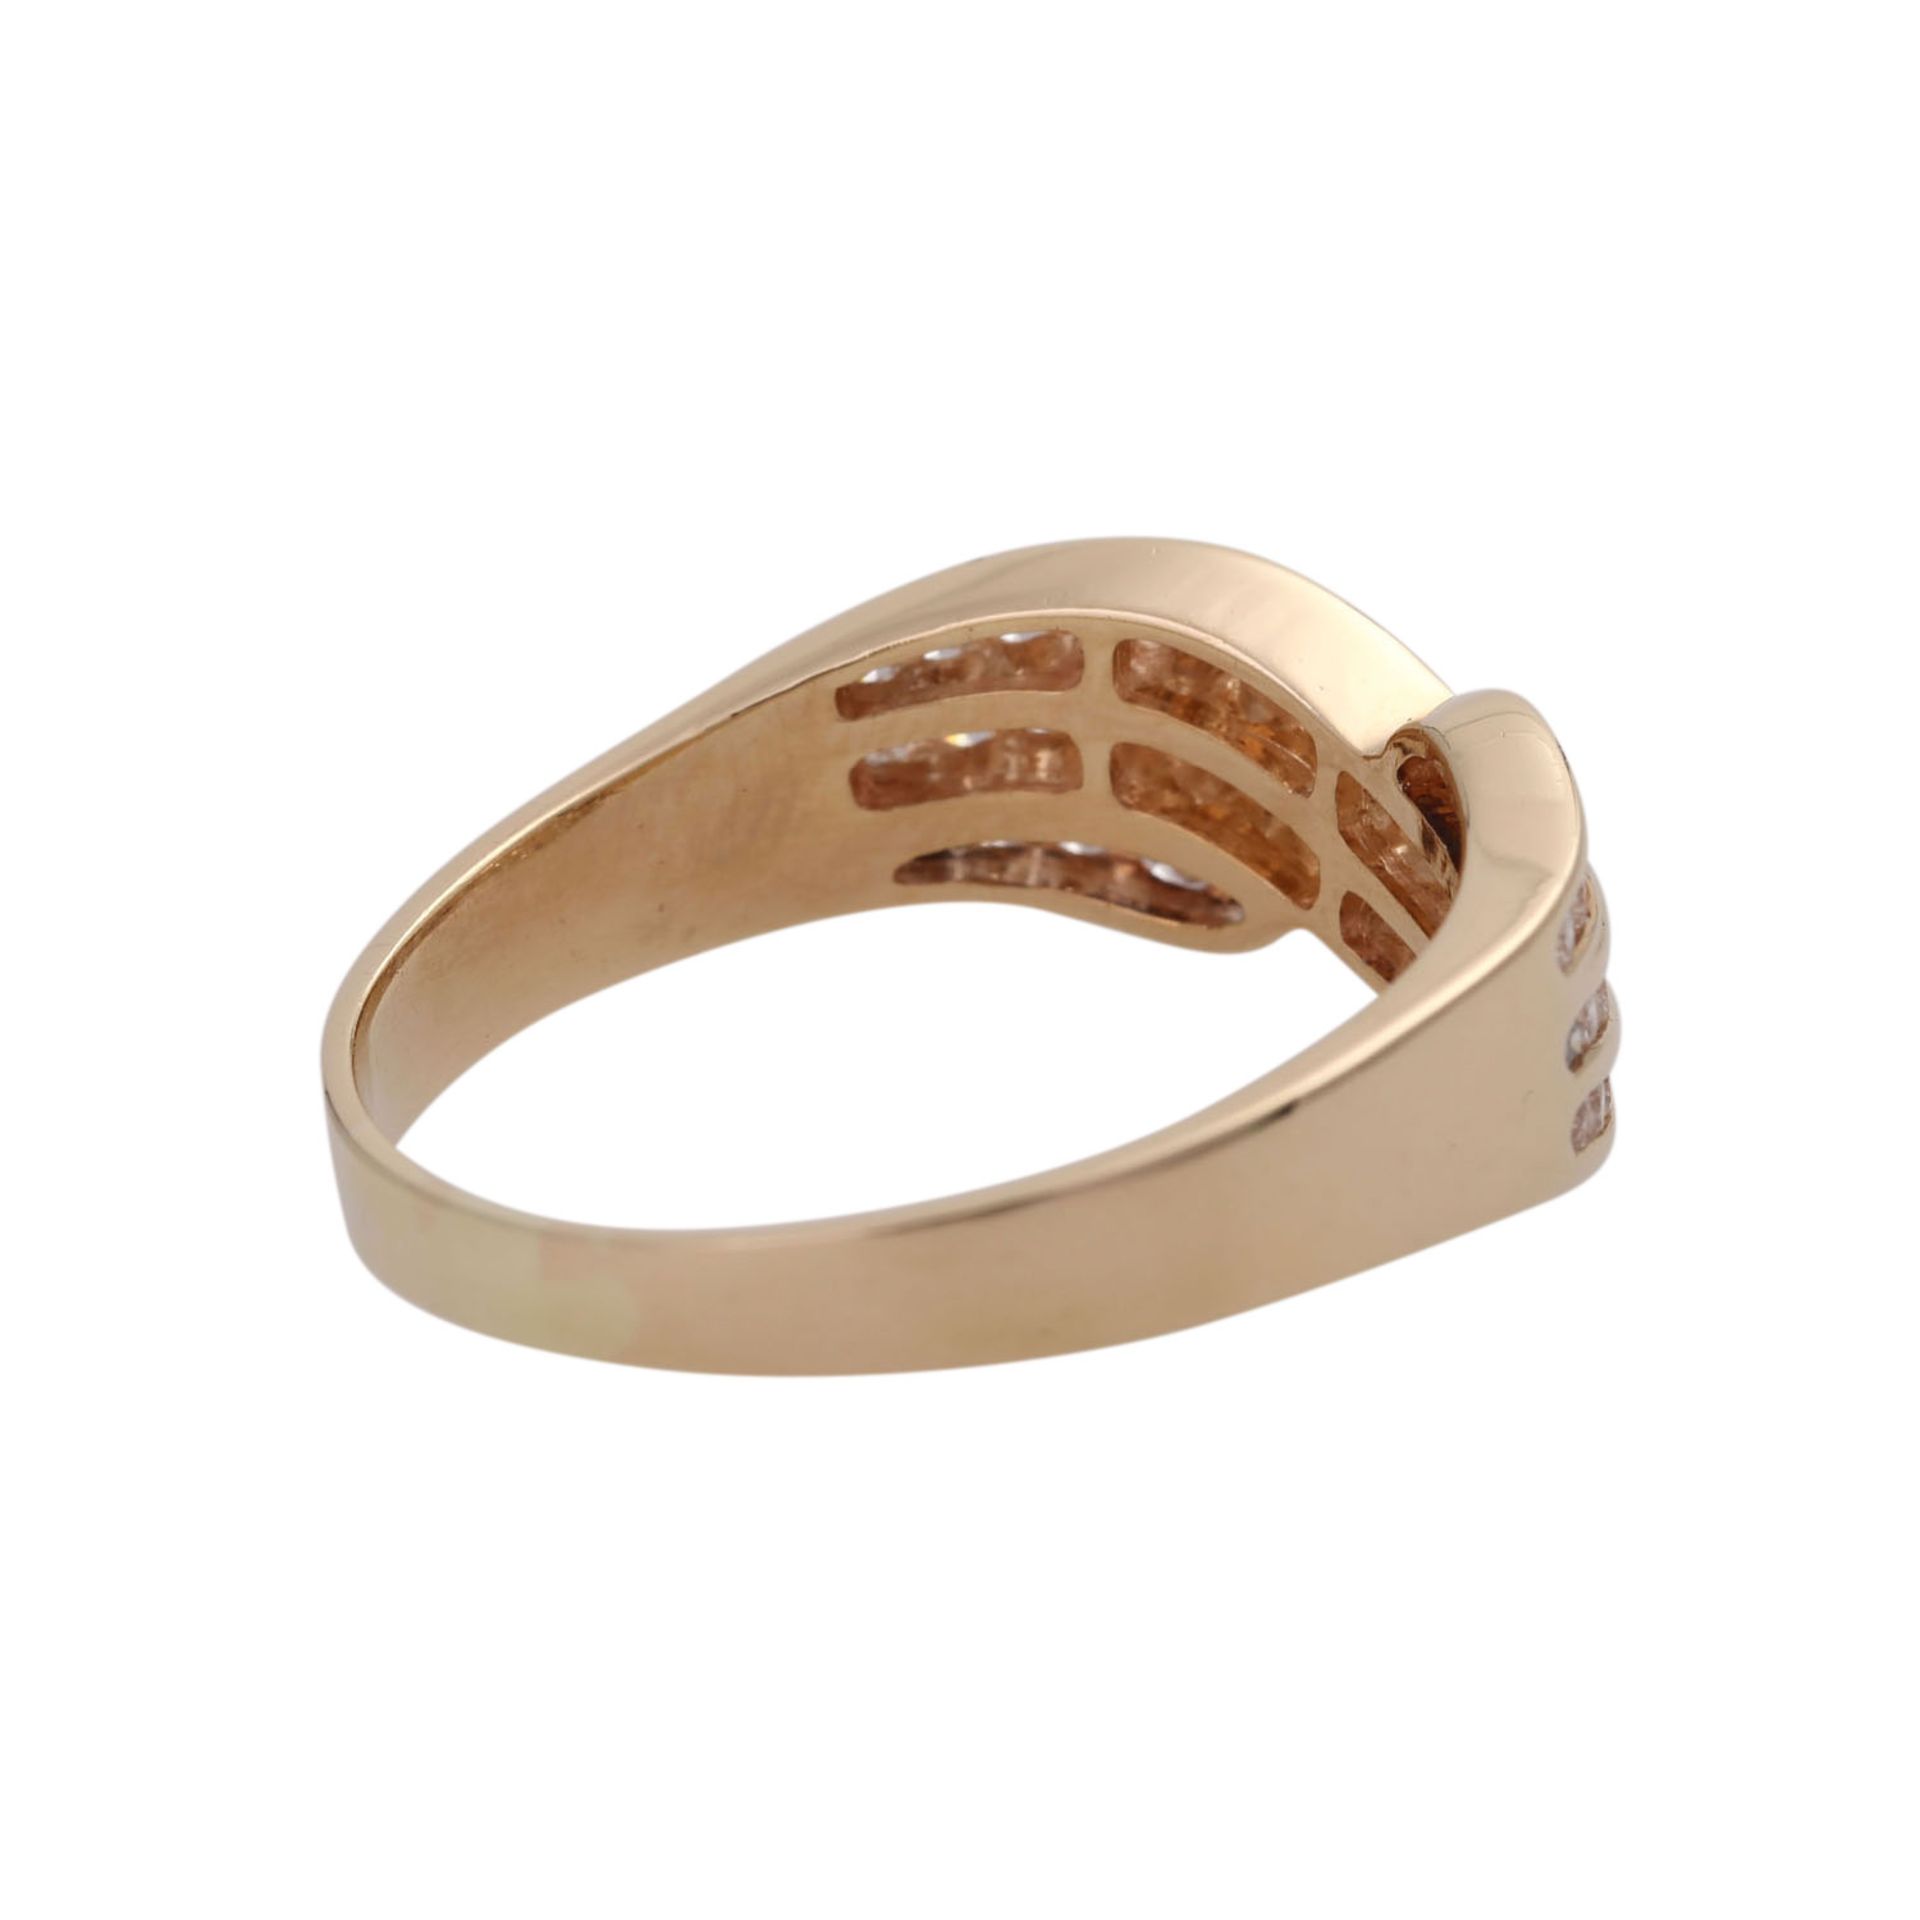 Ring mit Brillanten, zus. ca. 0,8 ct,guter Farb- und Reinheitsgrad, GG 14K, RW 58, Anordnung in 3 - Image 3 of 4